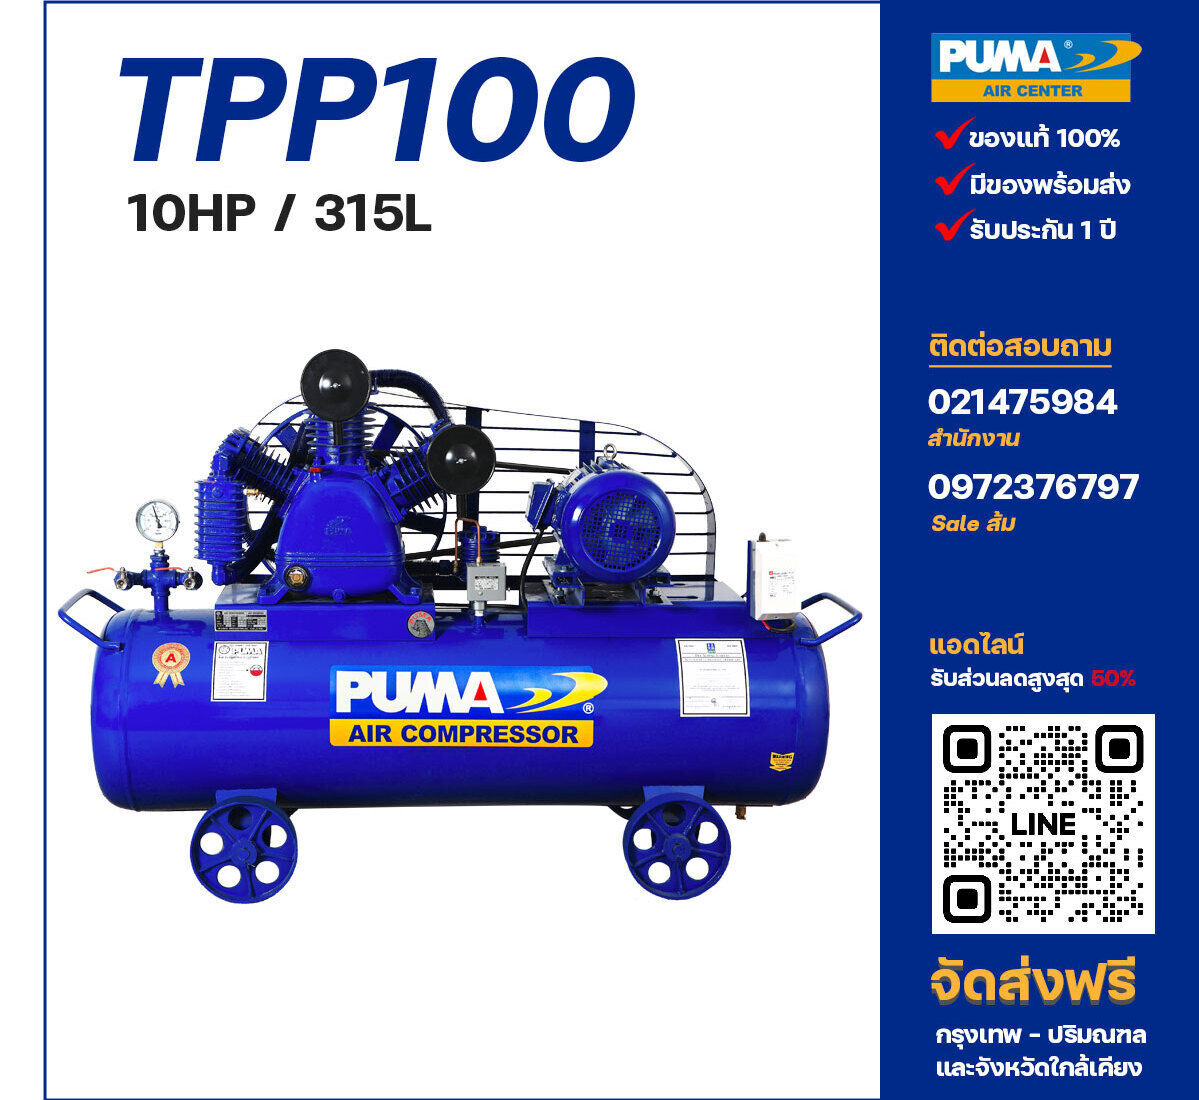 ปั๊มลมพูม่าแรงดันสูง PUMA Two-Stage TPP-100 ปั๊มลมลูกสูบ ขนาด 3 สูบ 10 แรงม้า 315 ลิตร PUMA พร้อมมอเตอร์ PUMA ไฟ 380V ส่งฟรี กรุงเทพฯ-ปริมณฑล รับประกัน 1 ปี